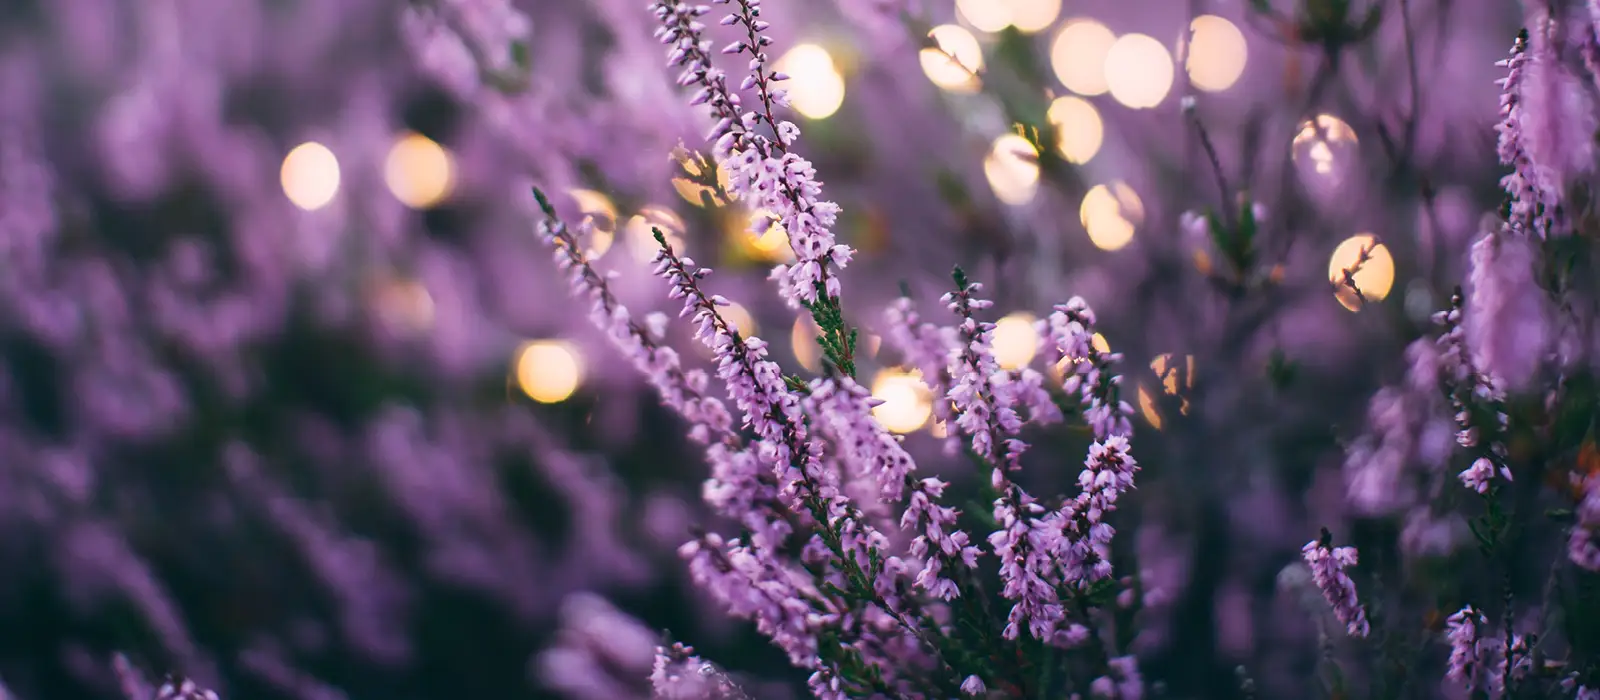 Purple flowers on a lavender plant